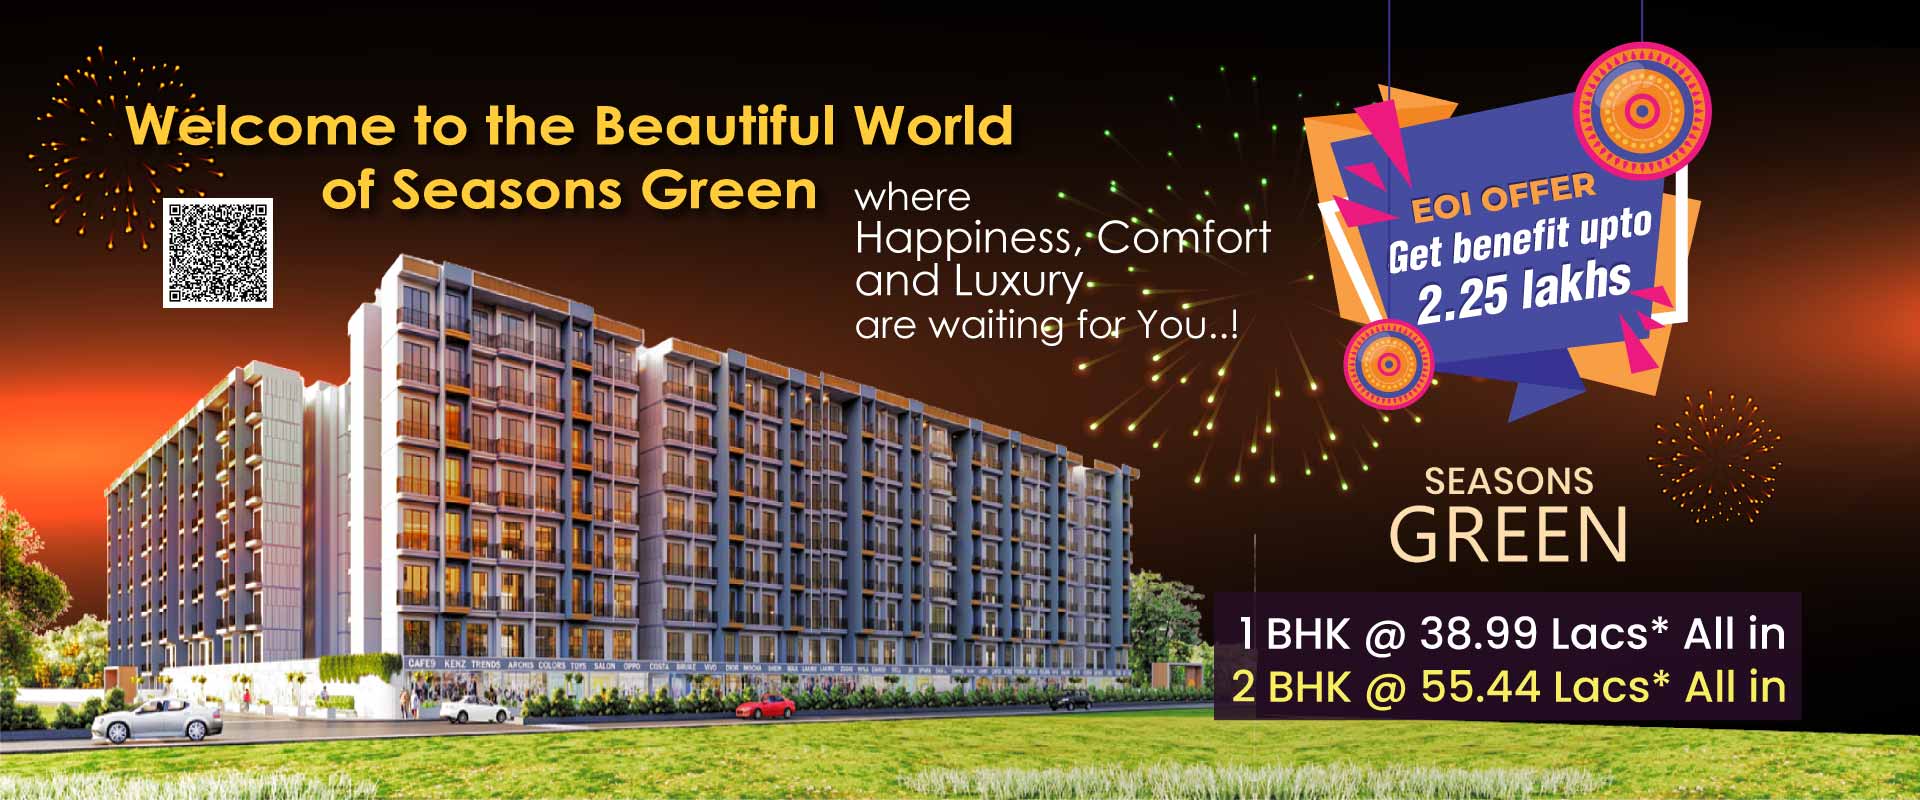 2 bhk flat in kalyan west - Seasons Green